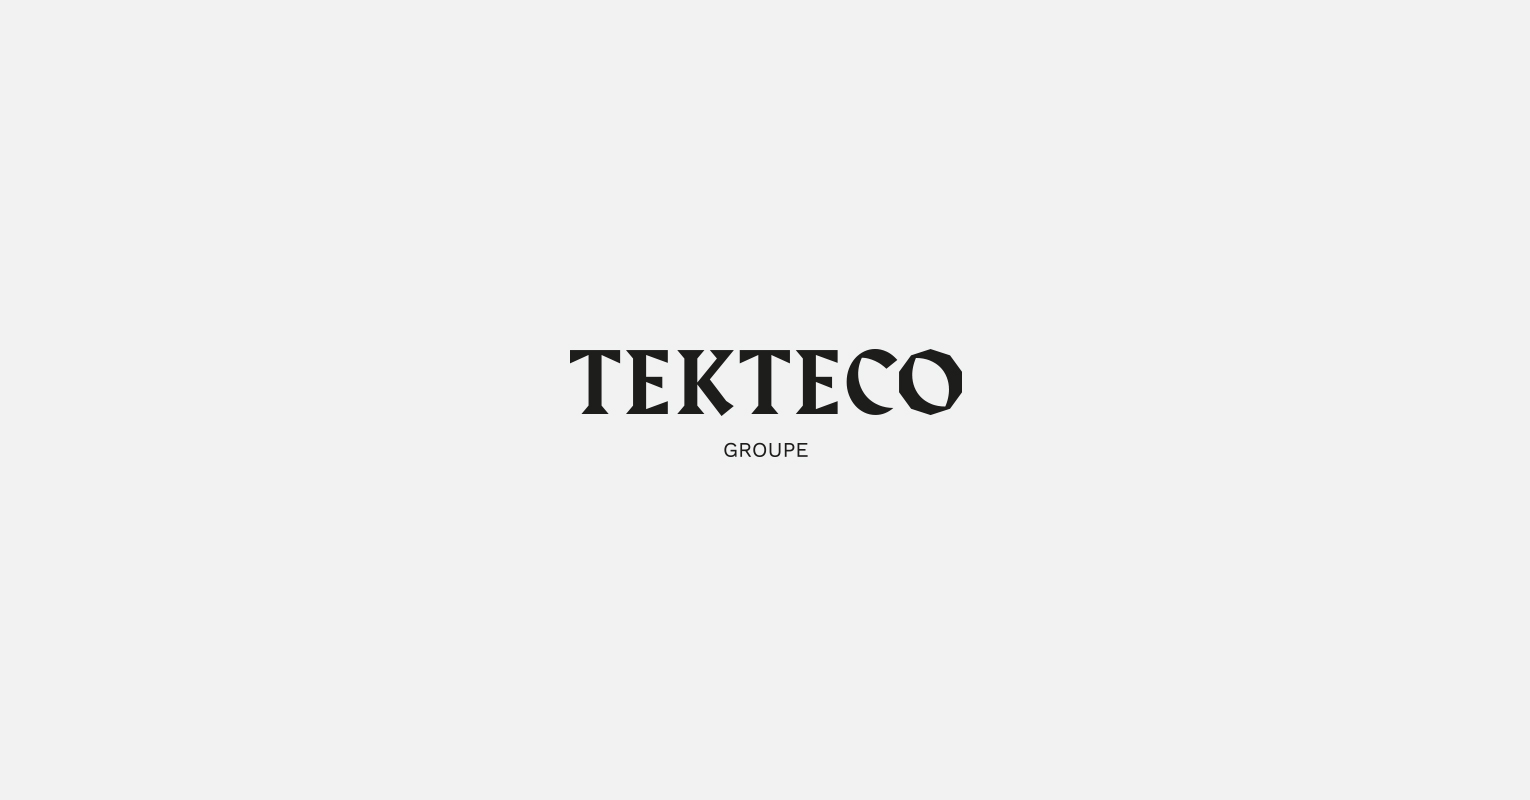 Les supports de communications réalisés pour Tekteco